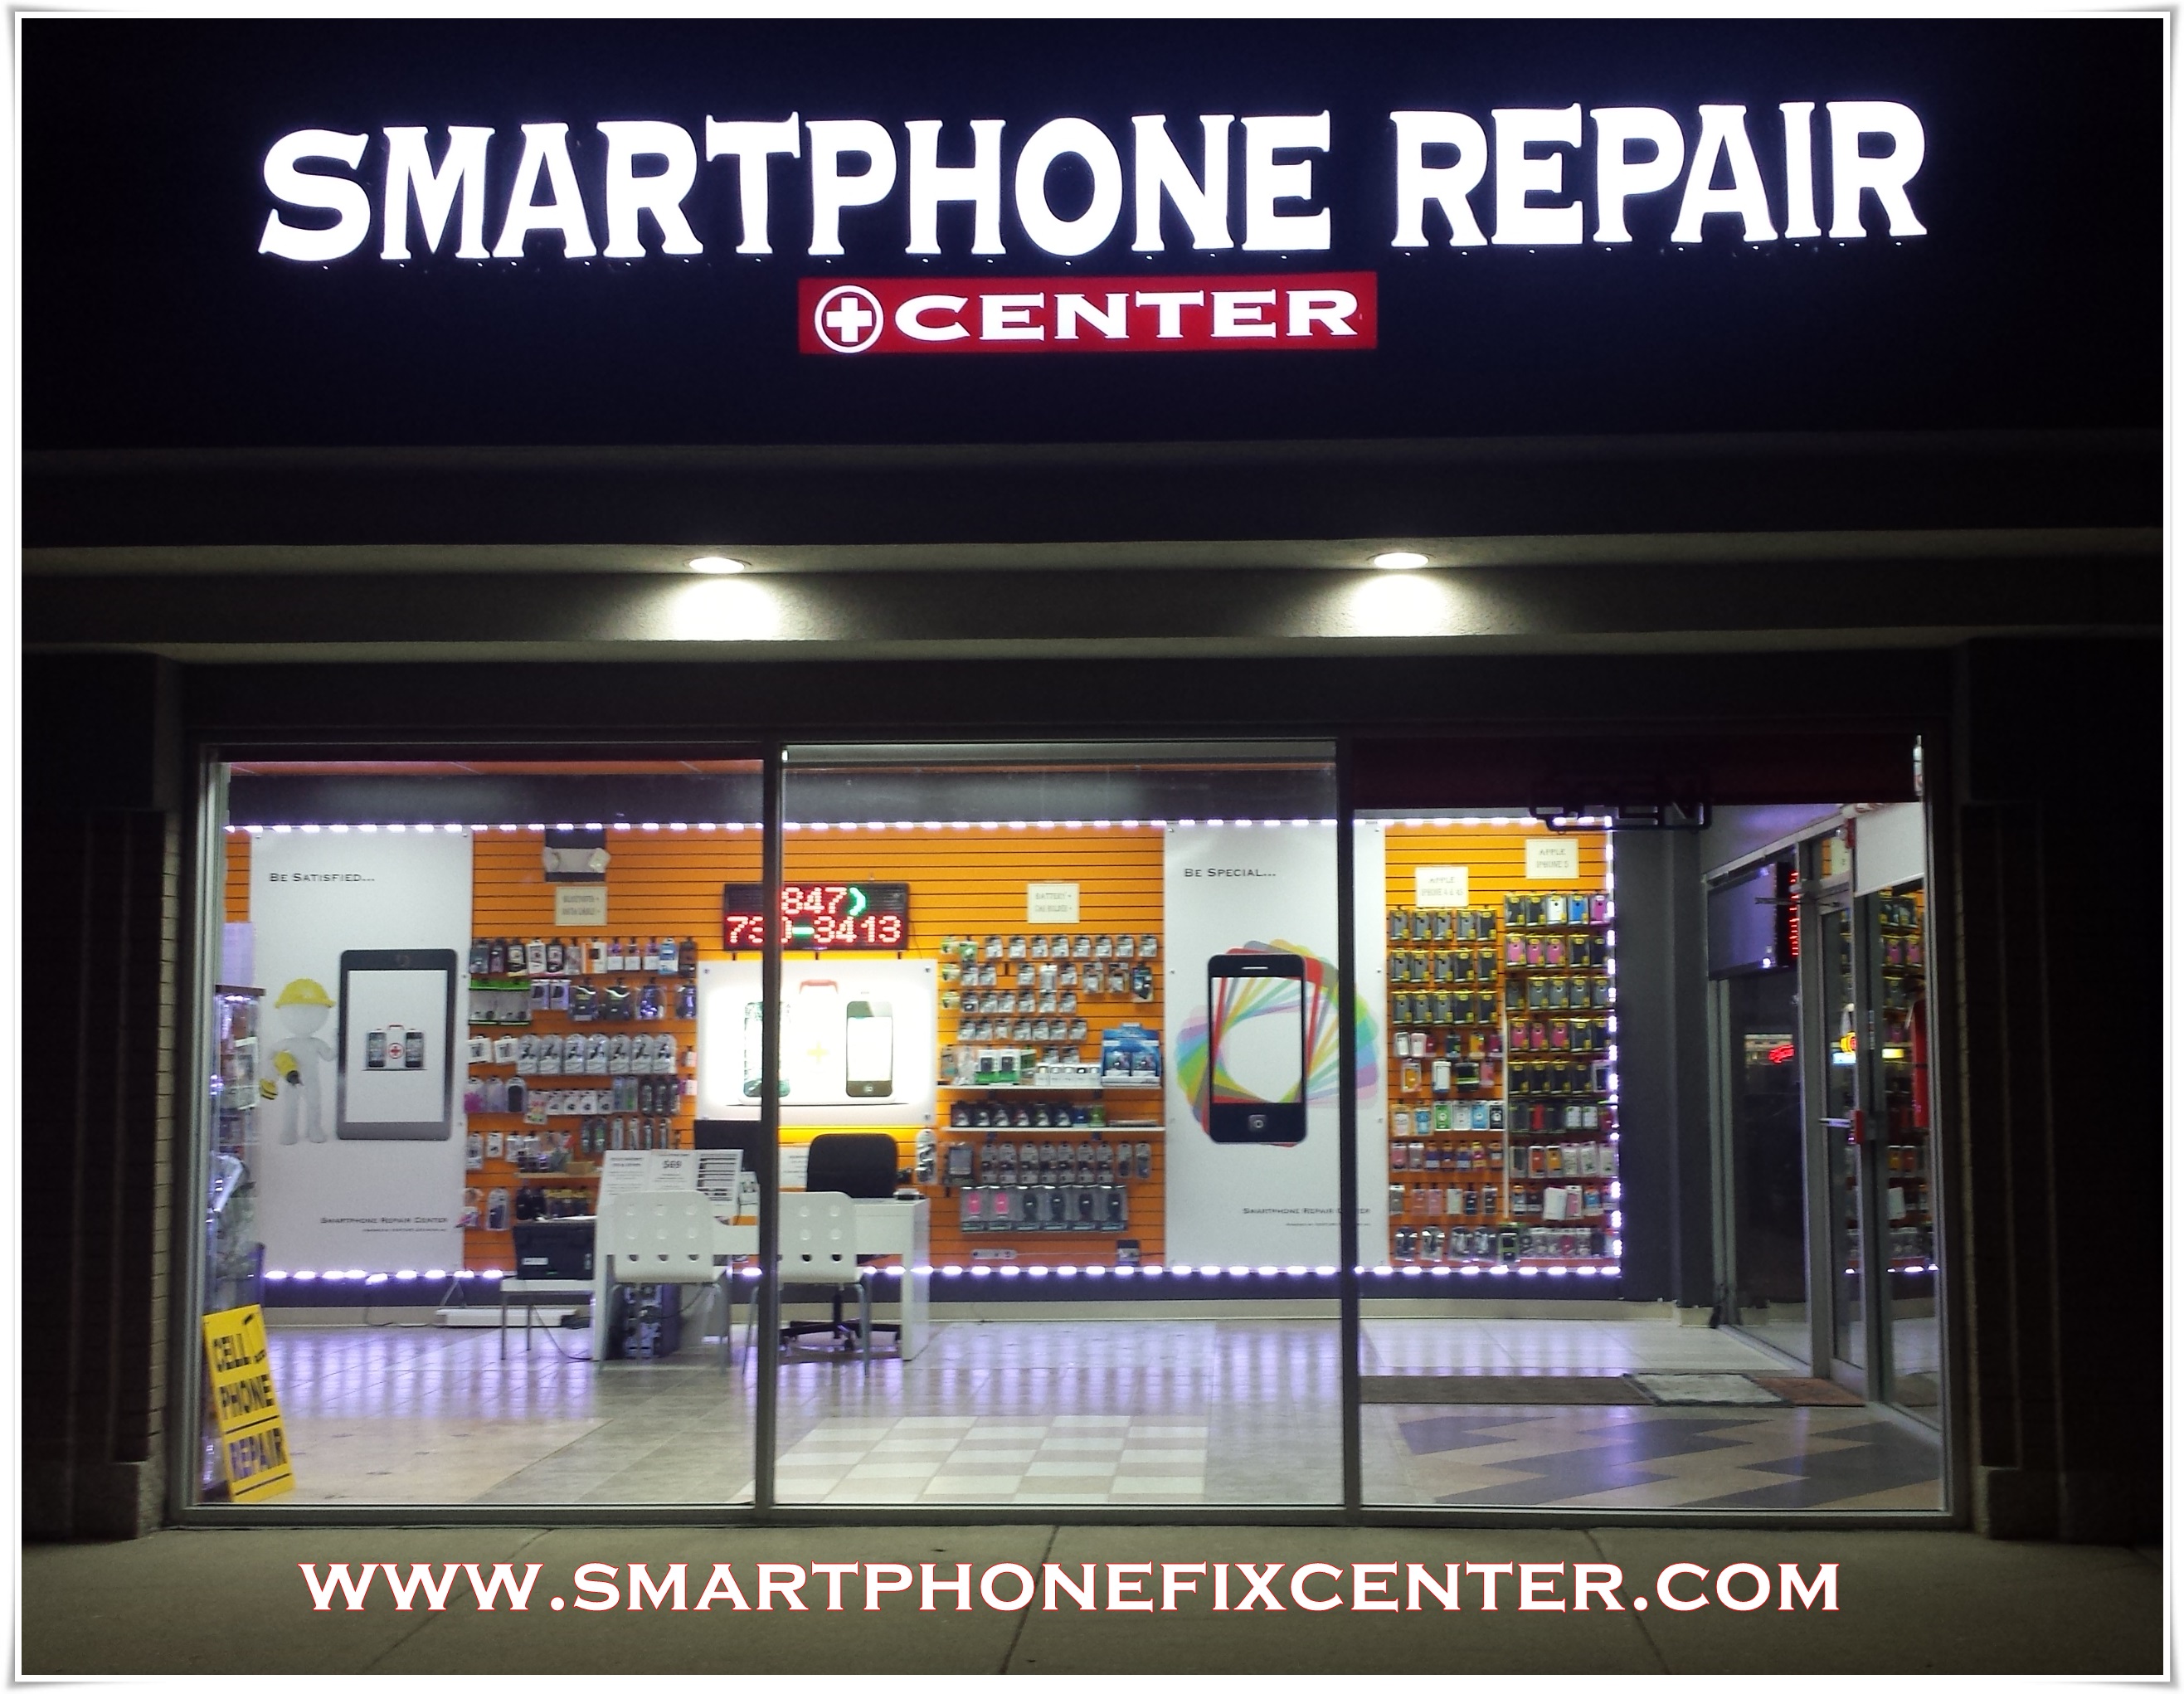 TecMundo - Mobile Phone Repair Shop em Cajazeiras